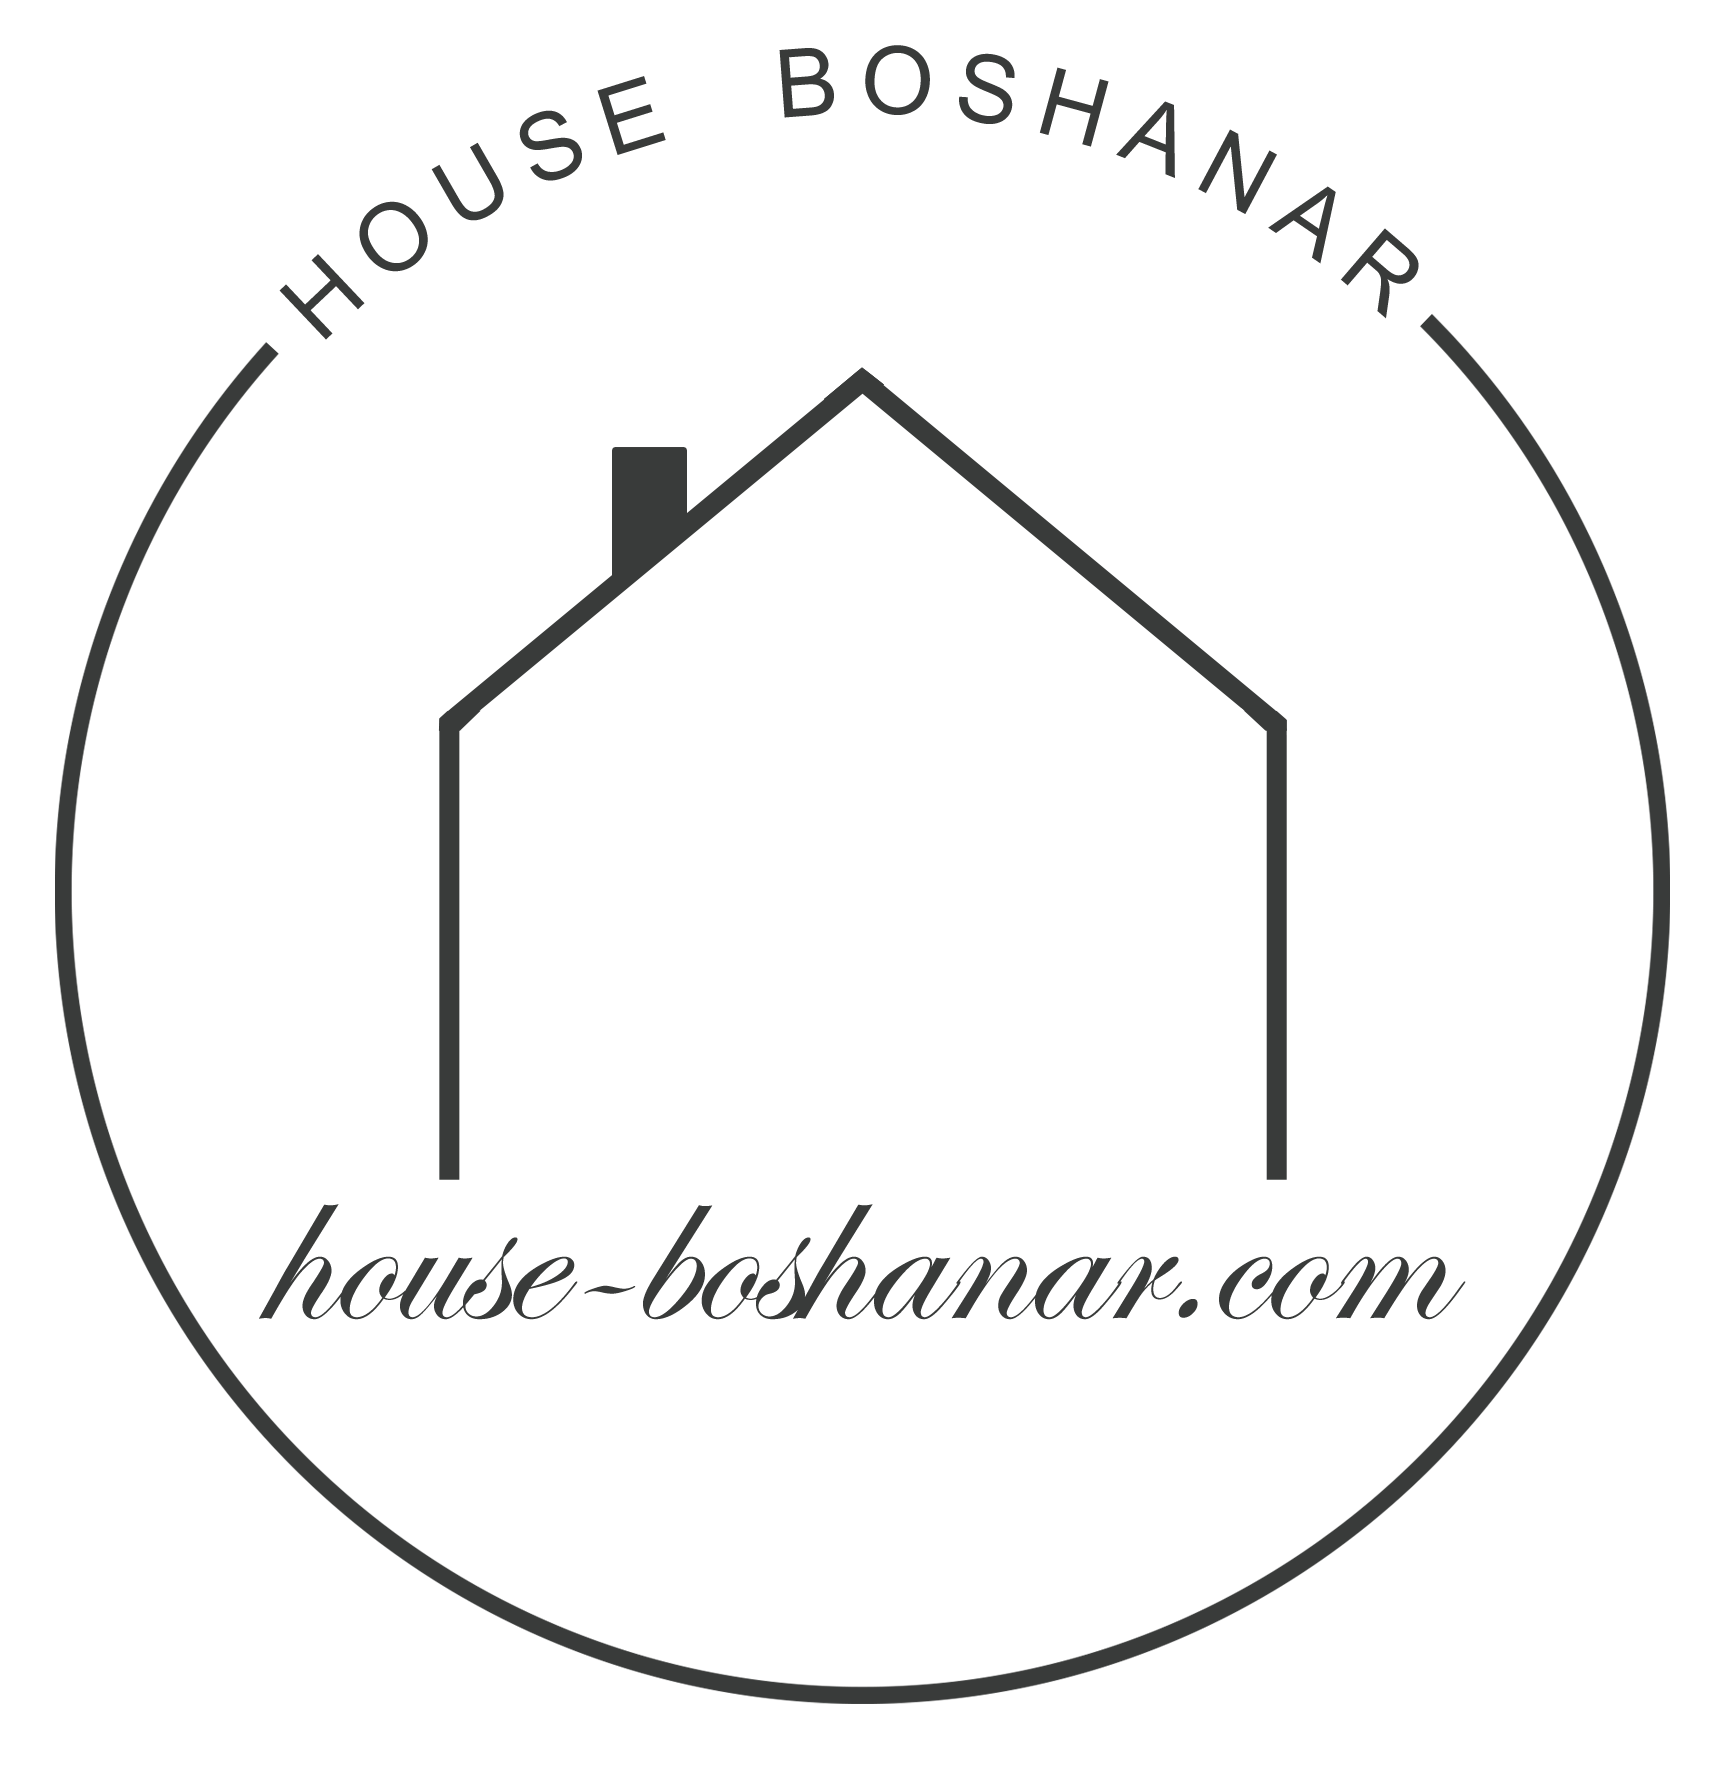 logotip-boshanar